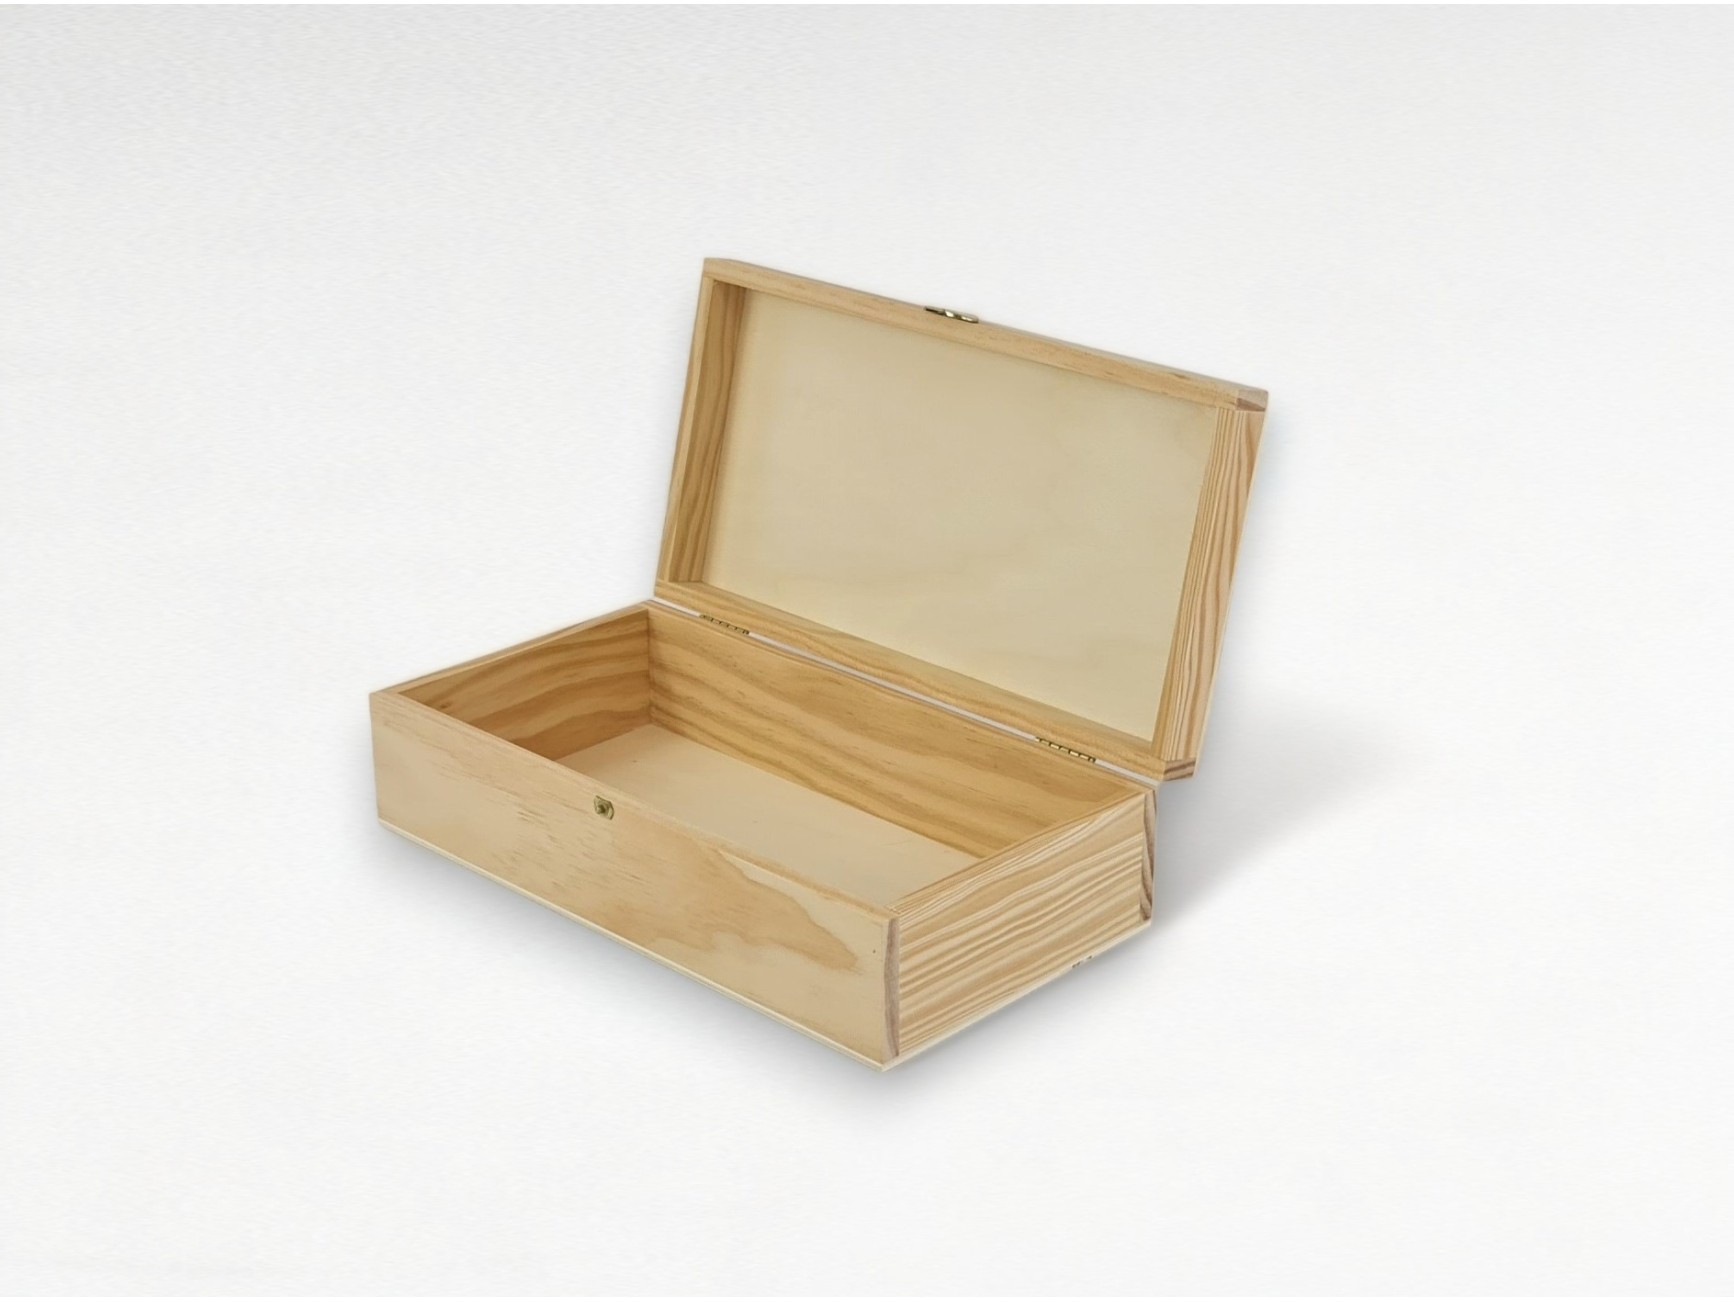 Cómo instalar bisagras pequeñas en una caja de madera?